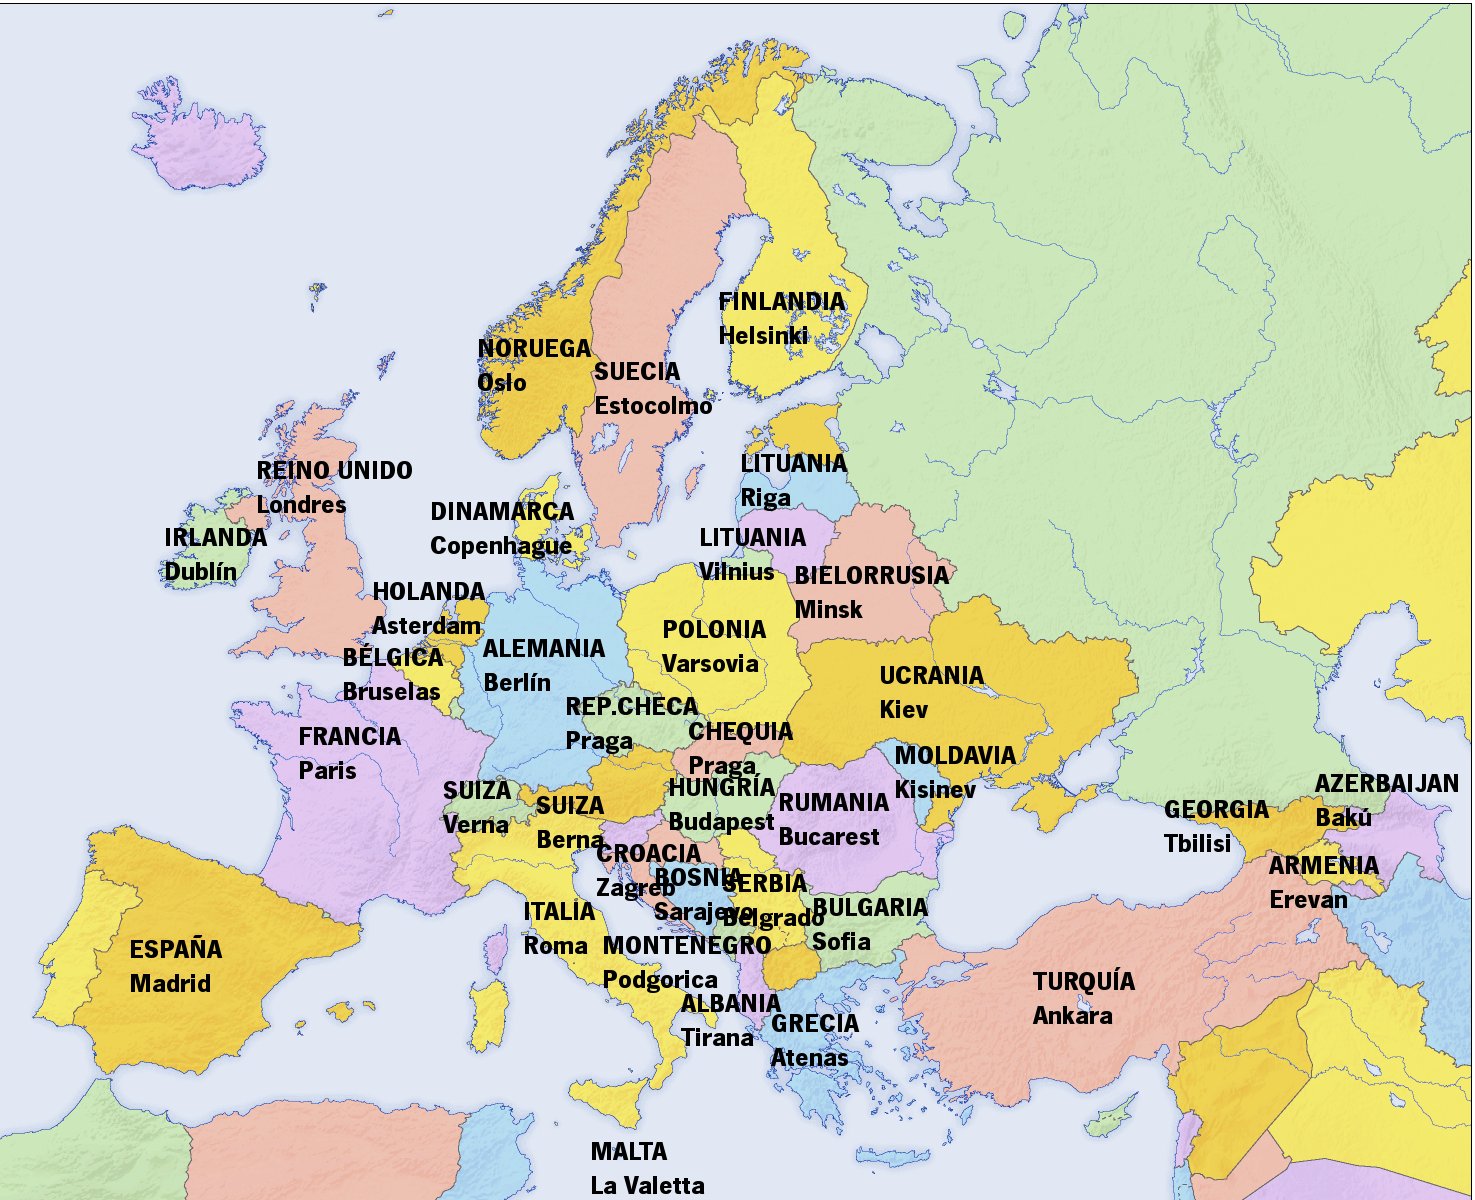 [̲̅M̲̅][̲̅a̲̅][̲̅n̲̅][̲̅u̲̅]™: El mapa de Europa